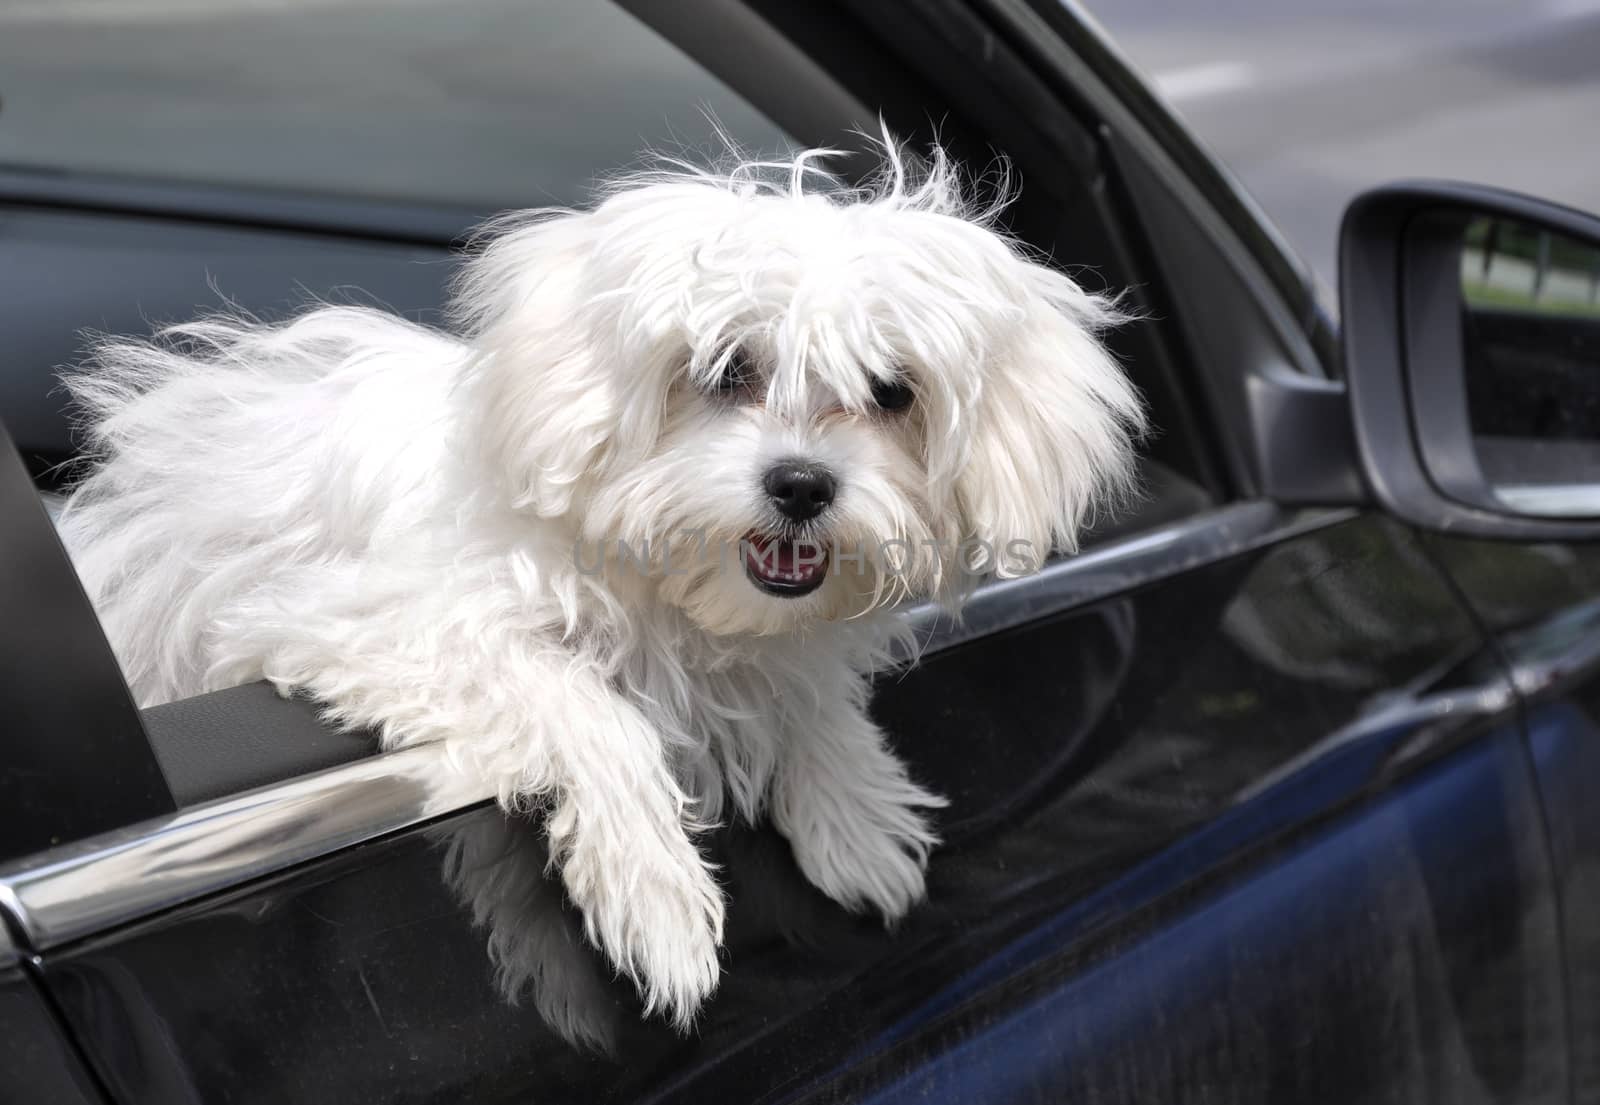 vygllyadyvayuschaya maltese dog from a car window